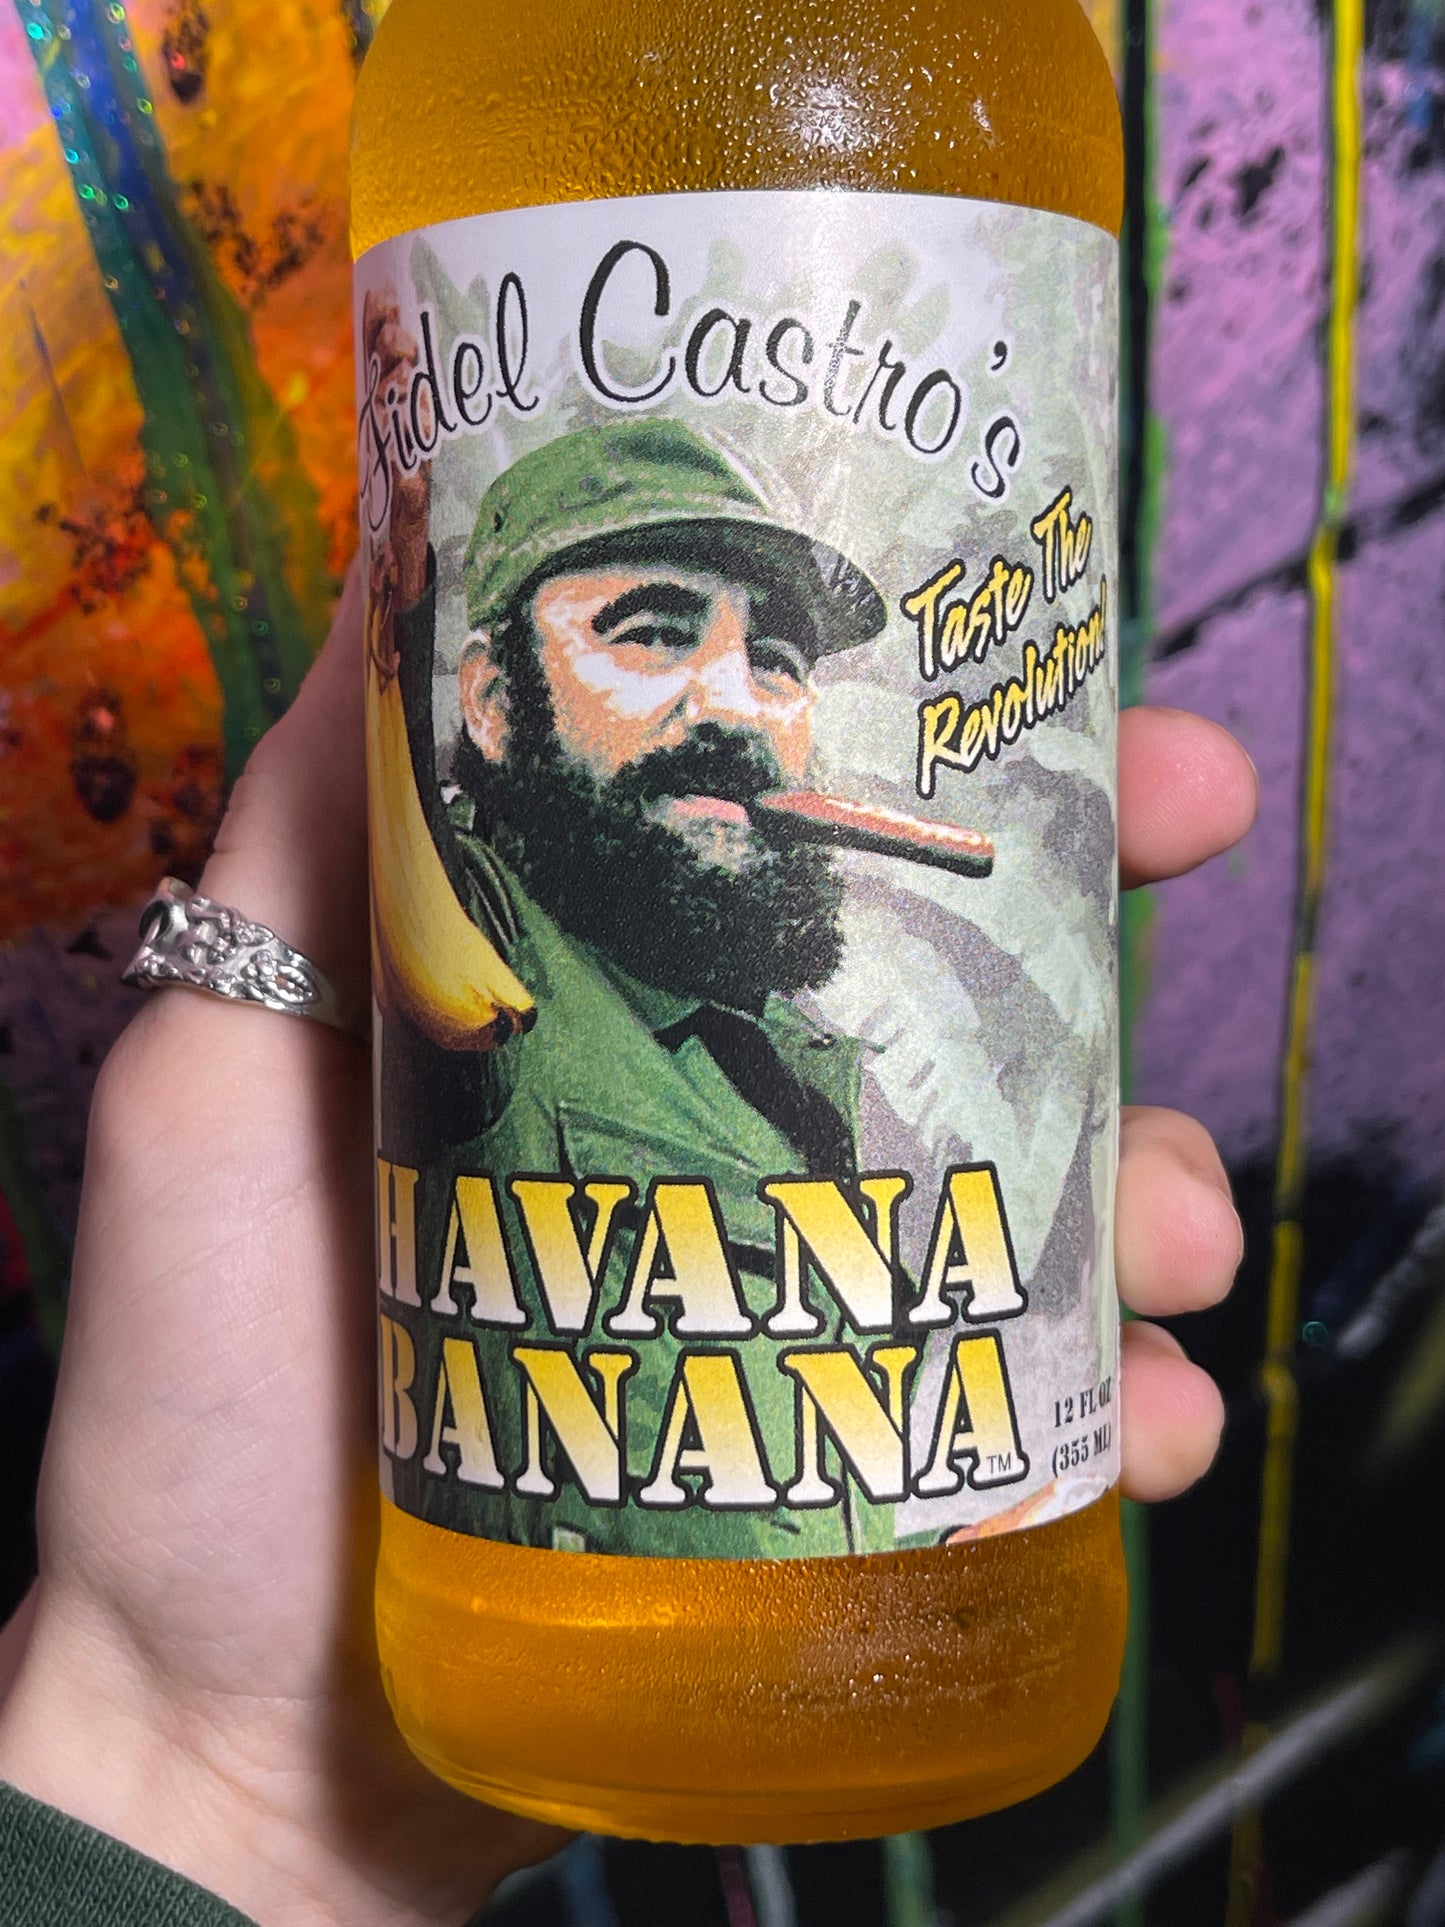 Fidel Castro’s Havana Banana Soda